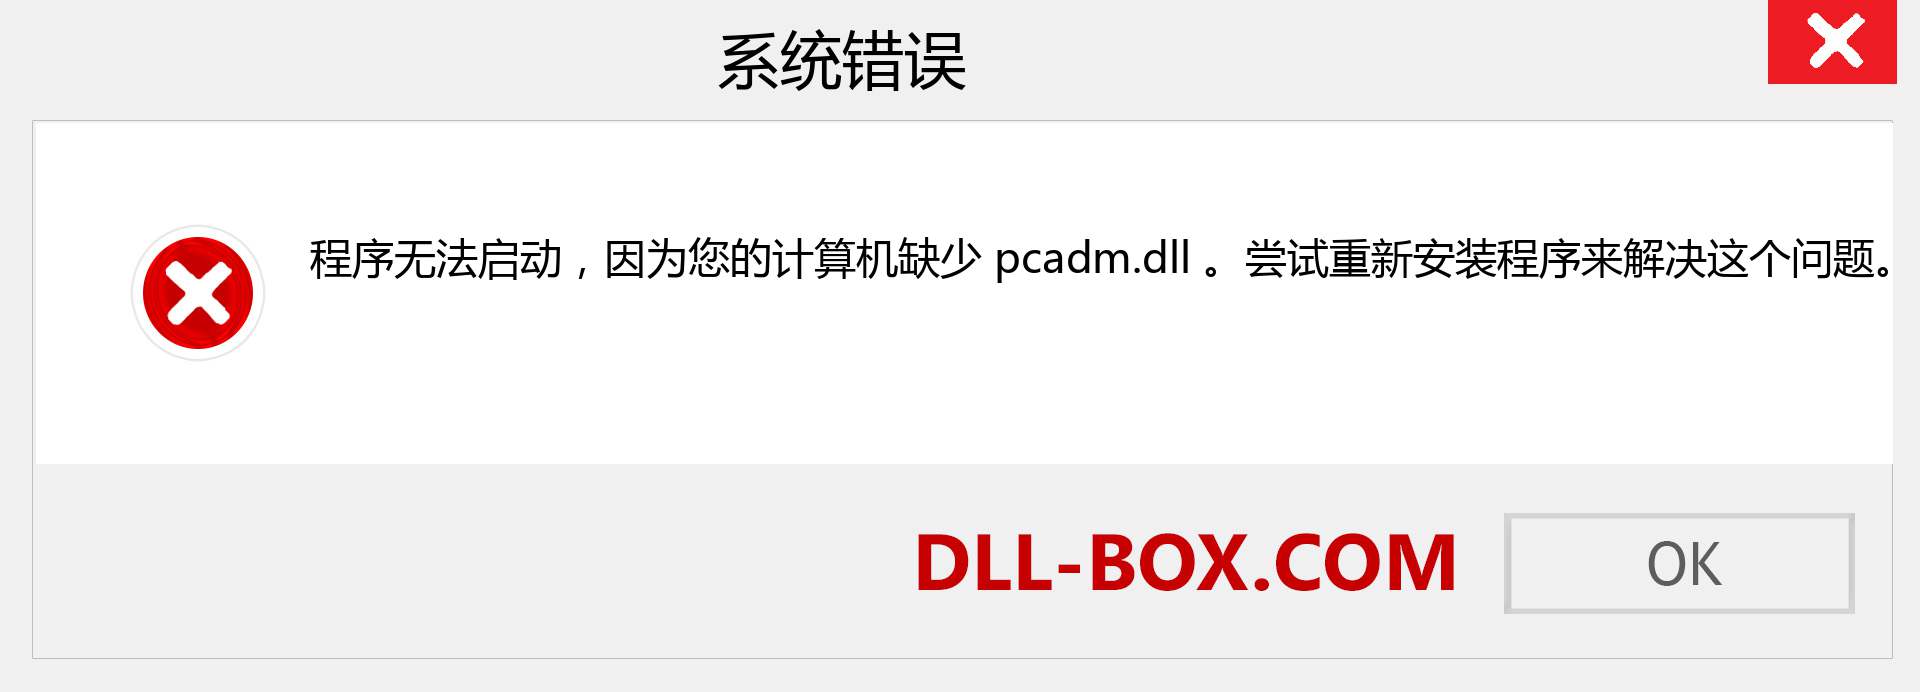 pcadm.dll 文件丢失？。 适用于 Windows 7、8、10 的下载 - 修复 Windows、照片、图像上的 pcadm dll 丢失错误